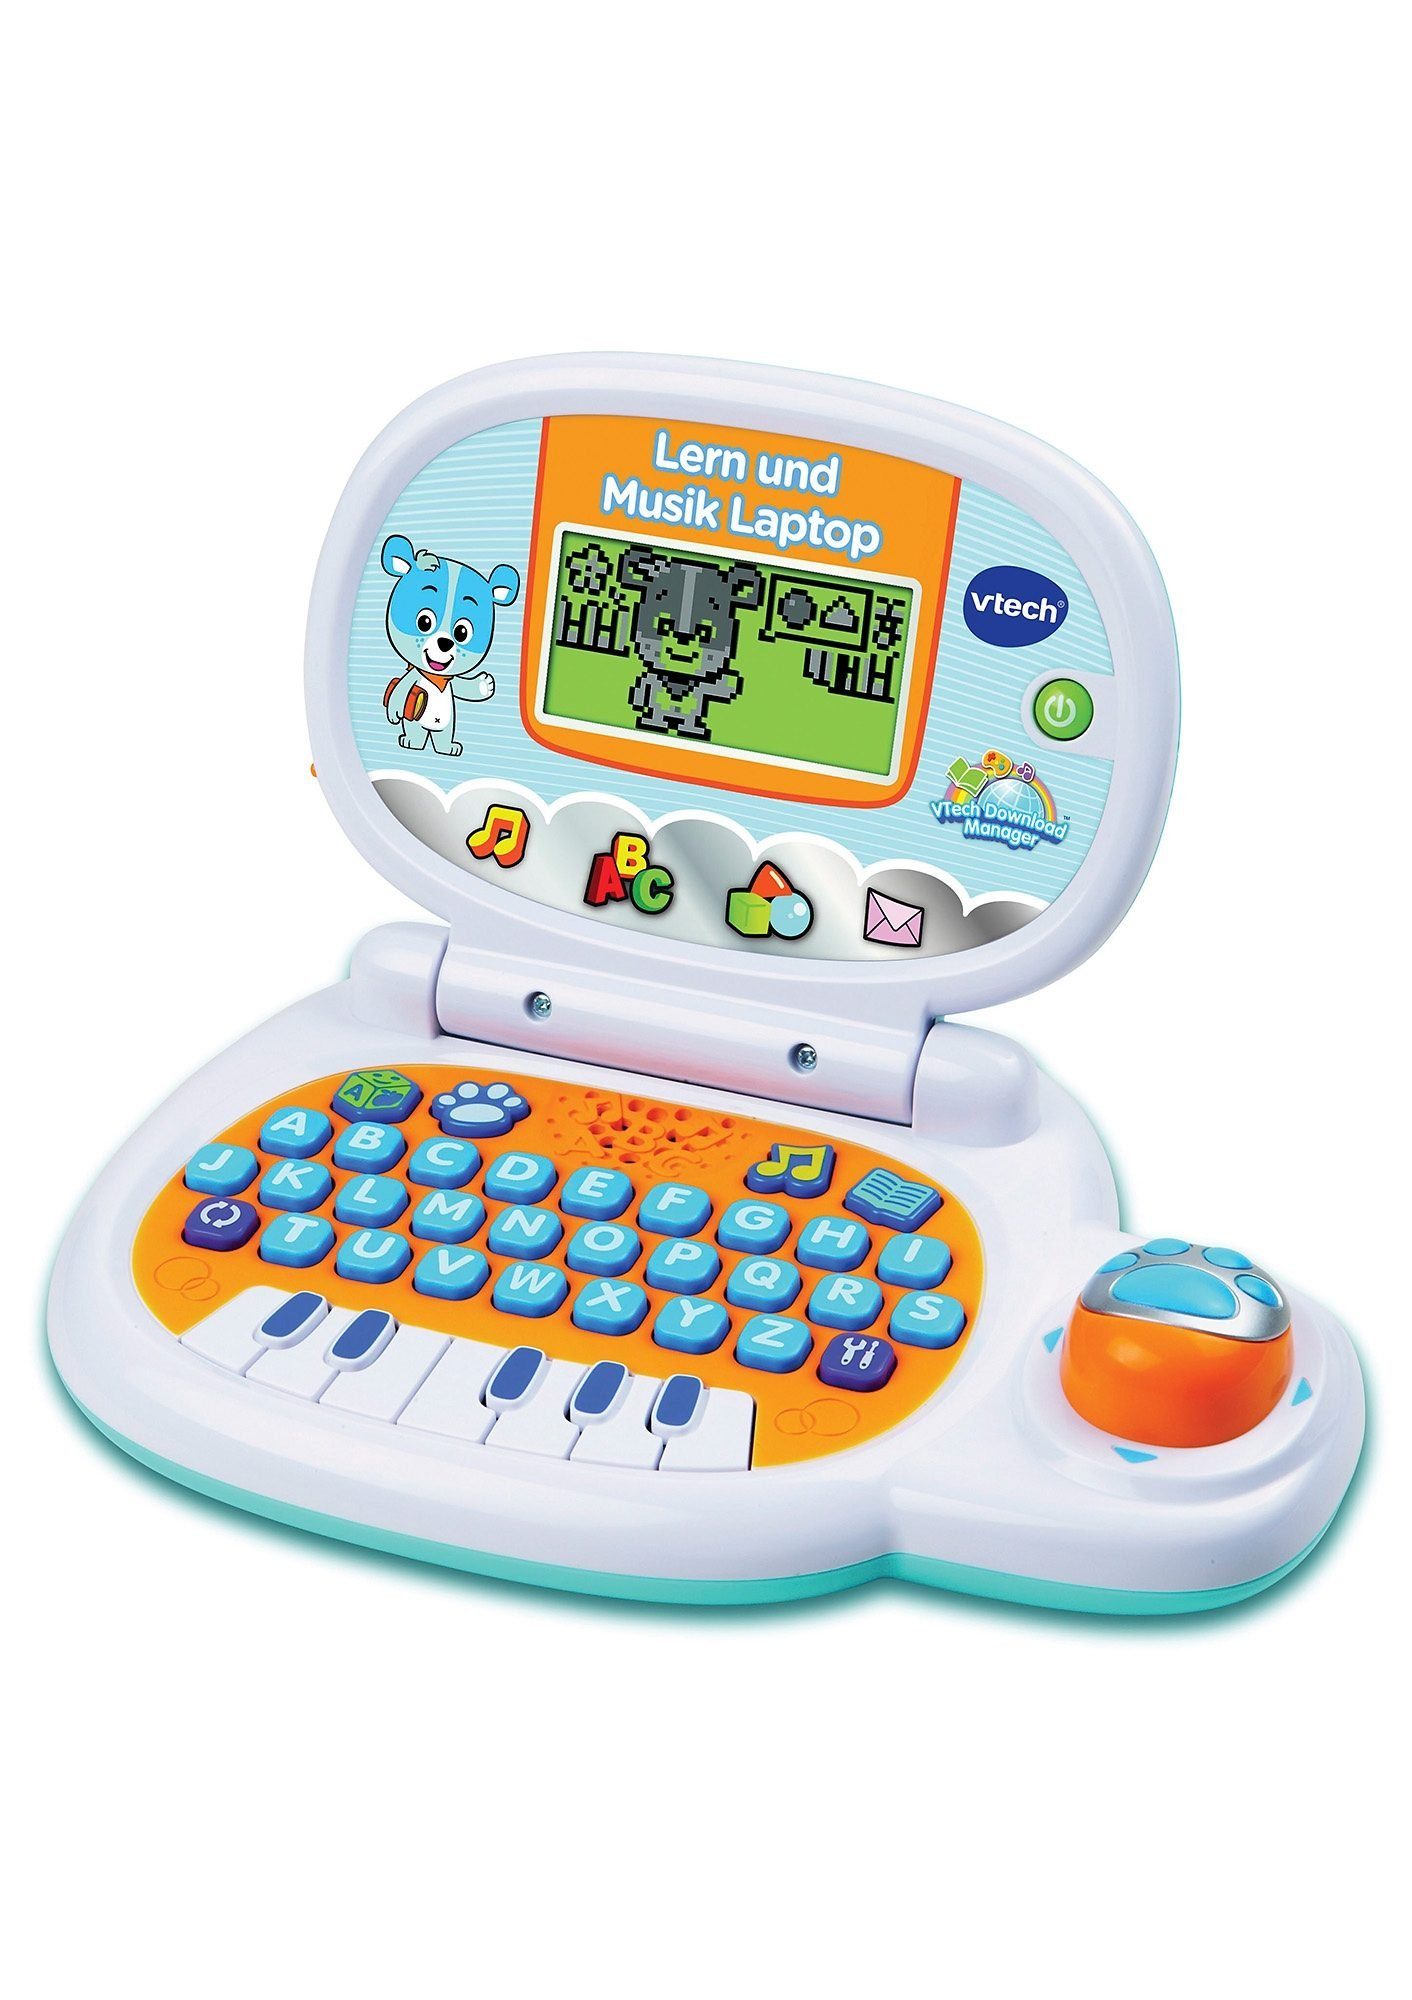 Vtech® Kindercomputer VTechBaby, Lern und Musik Laptop